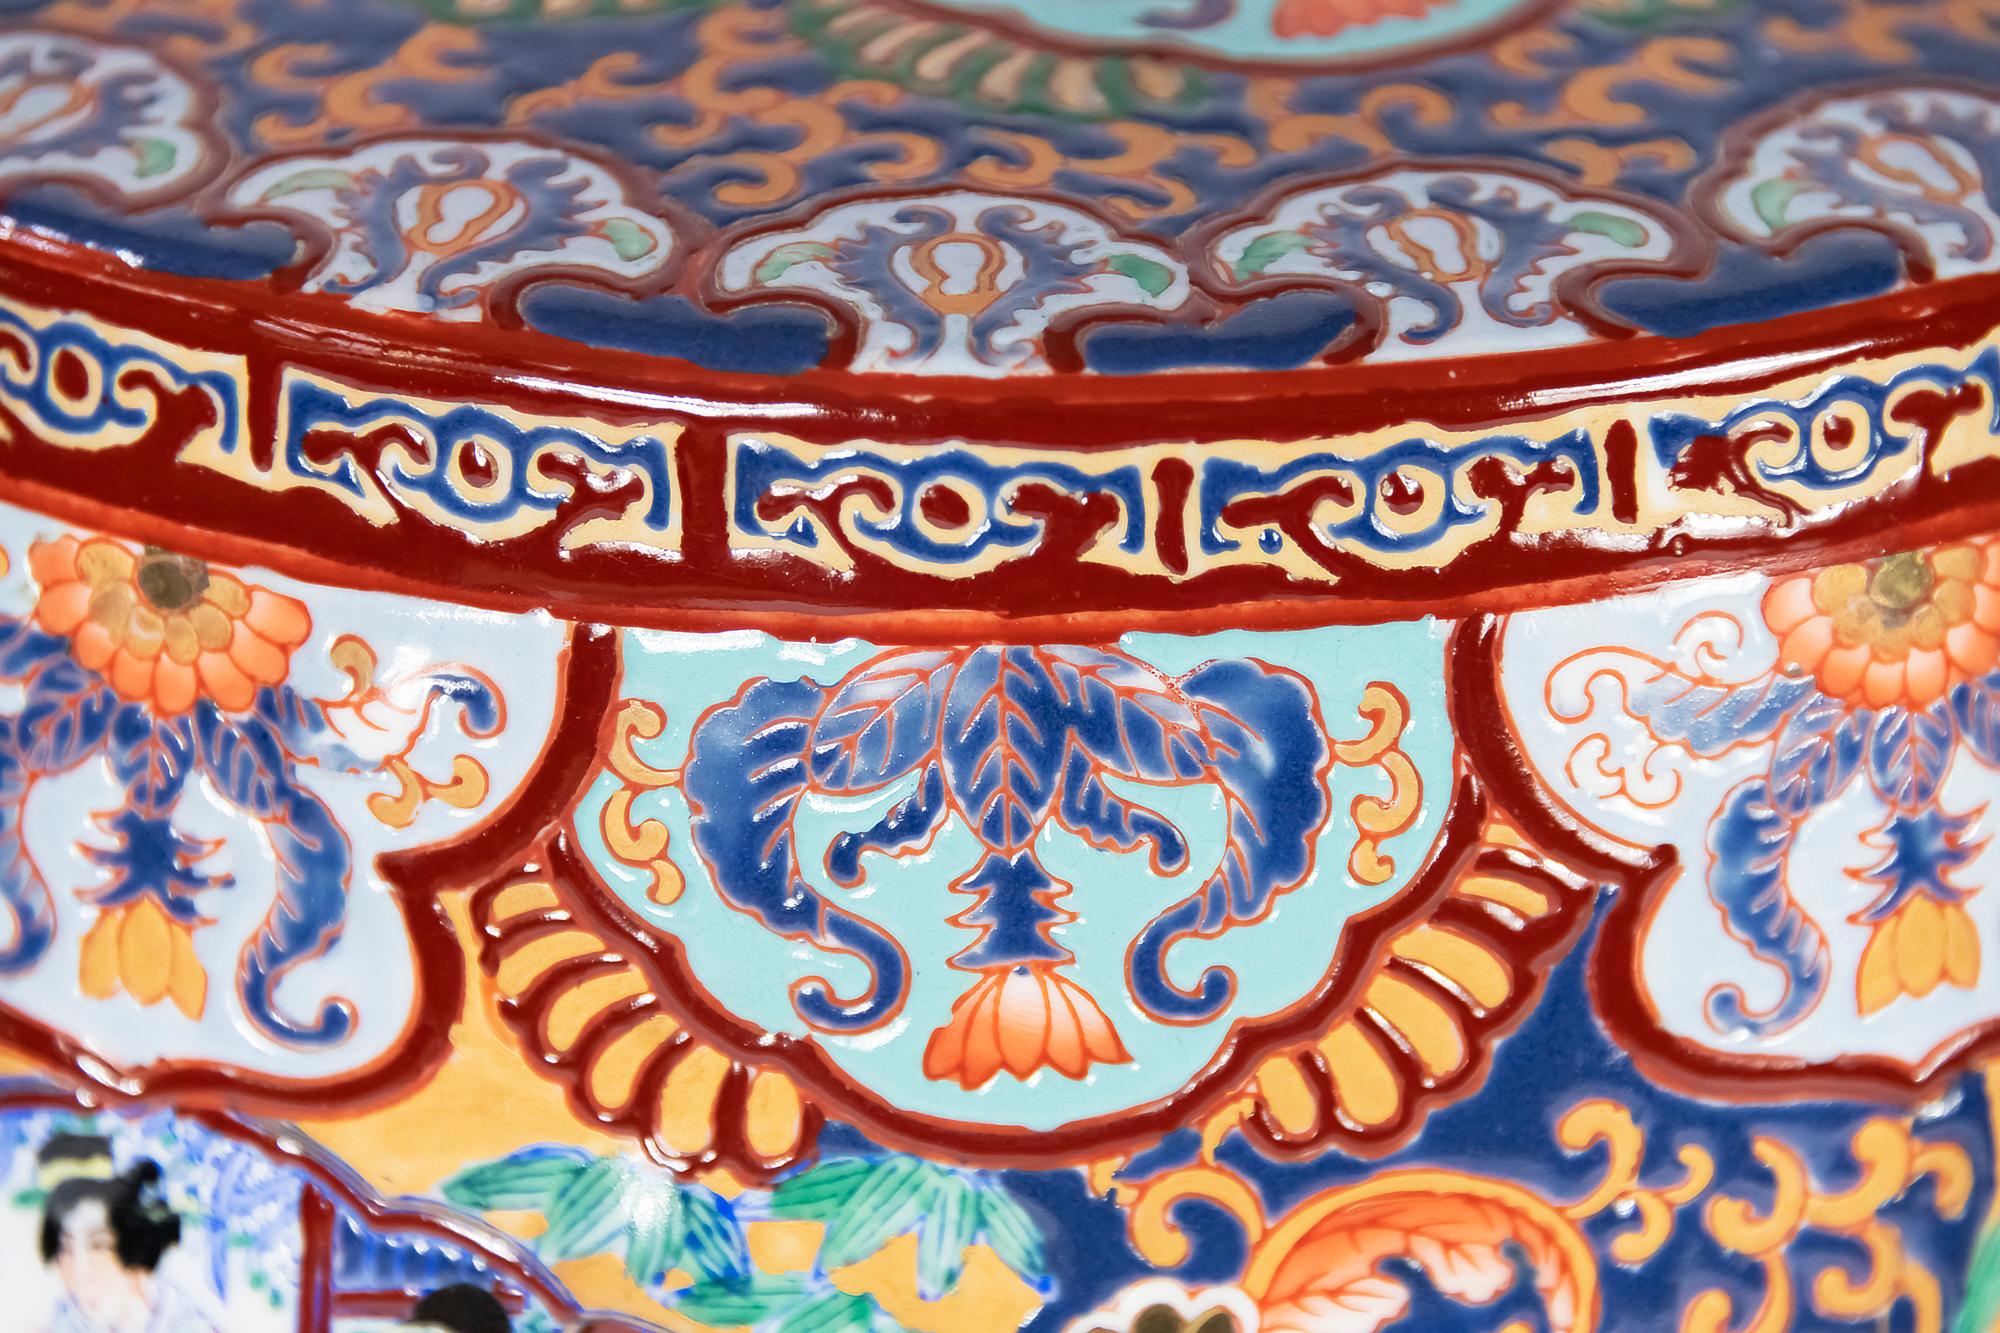 chinese ceramic stool